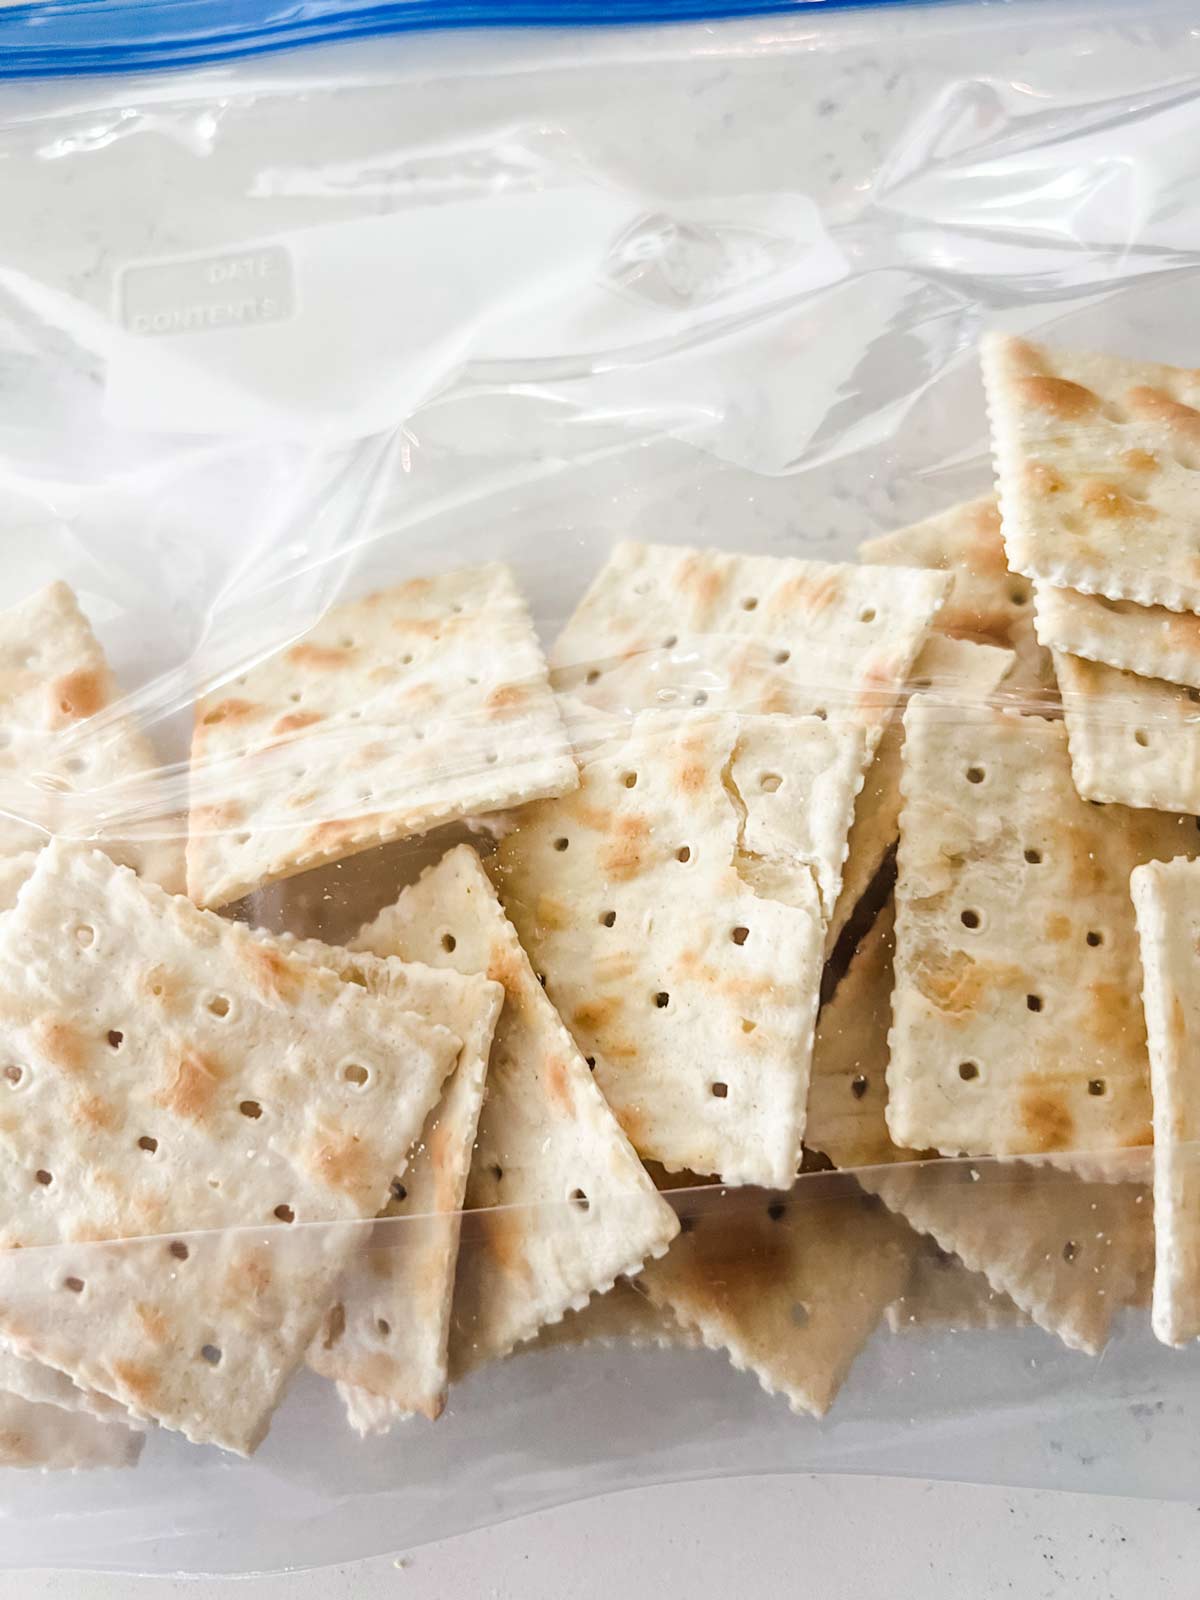 Saltine crackers in a zip top bag.